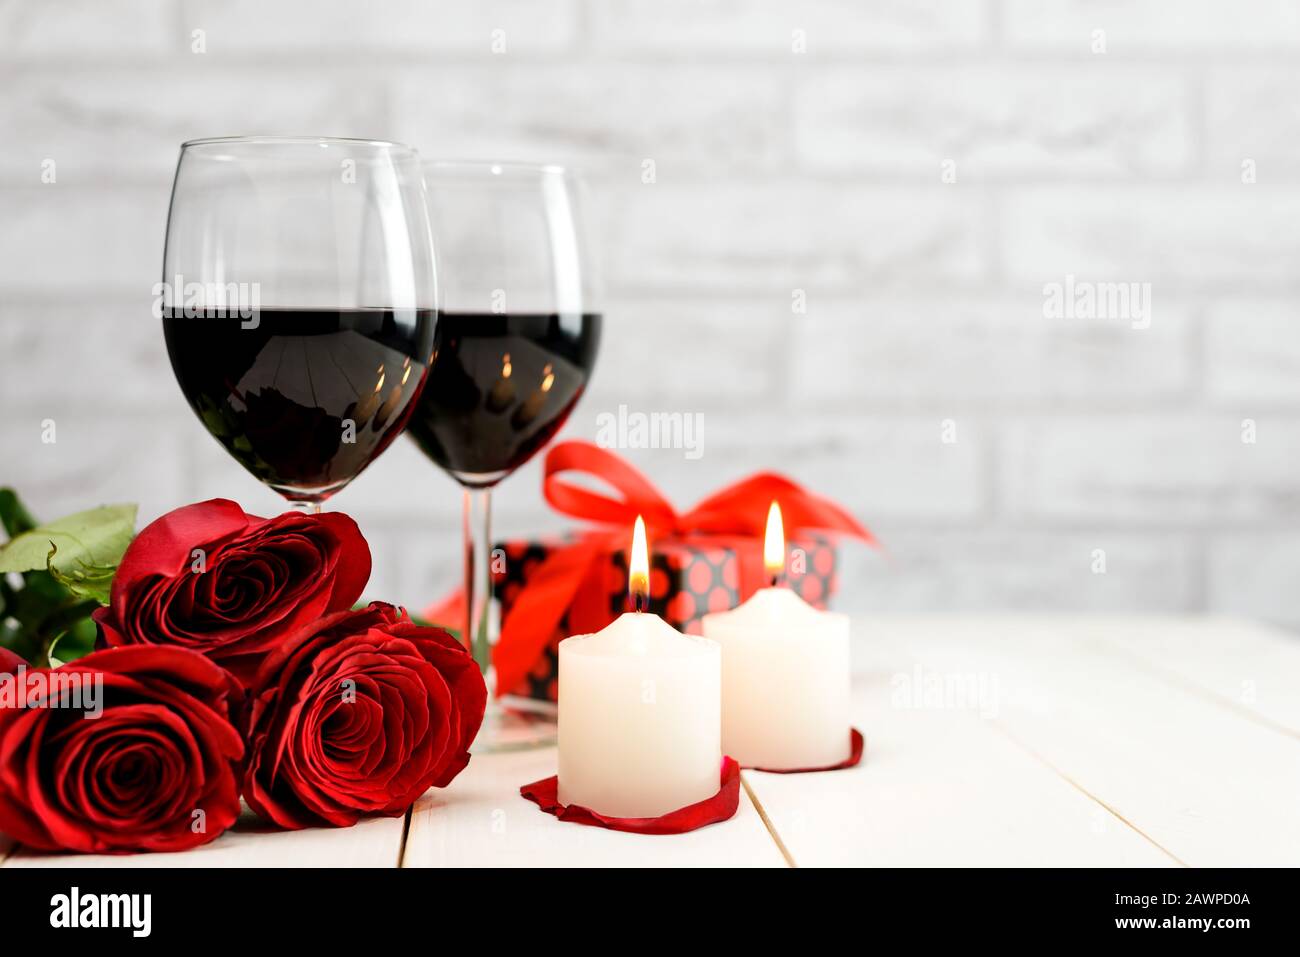 Concepto del día de San Valentín. Dos copas de vino, rosas rojas, caja de regalo y velas encendidas en una mesa de madera blanca con espacio para texto. Focu selectivo Foto de stock